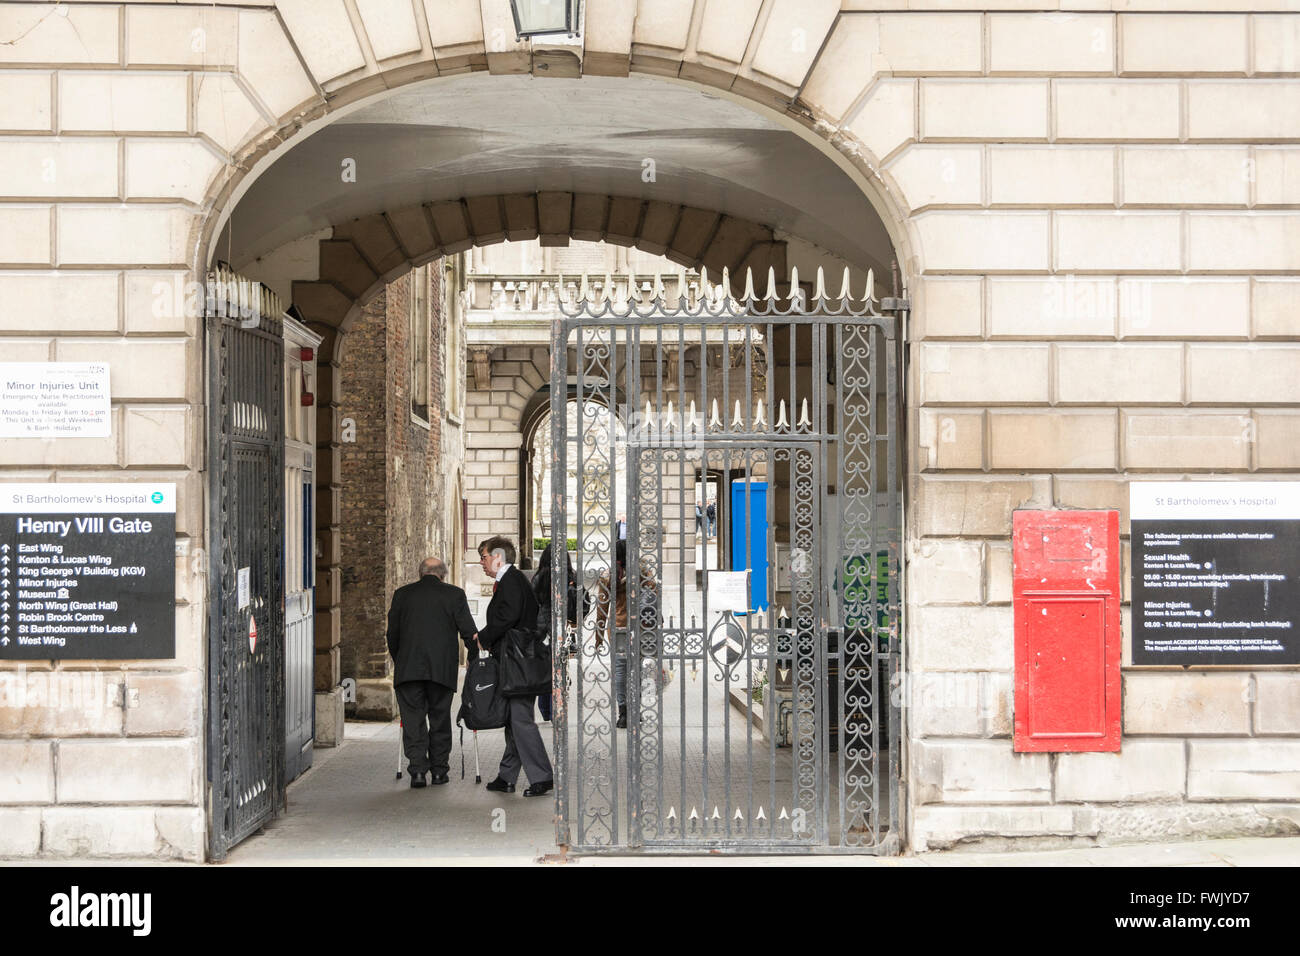 Puerta de entrada al Hospital St. Barts en Smithfield, centro de Londres, Reino Unido Foto de stock